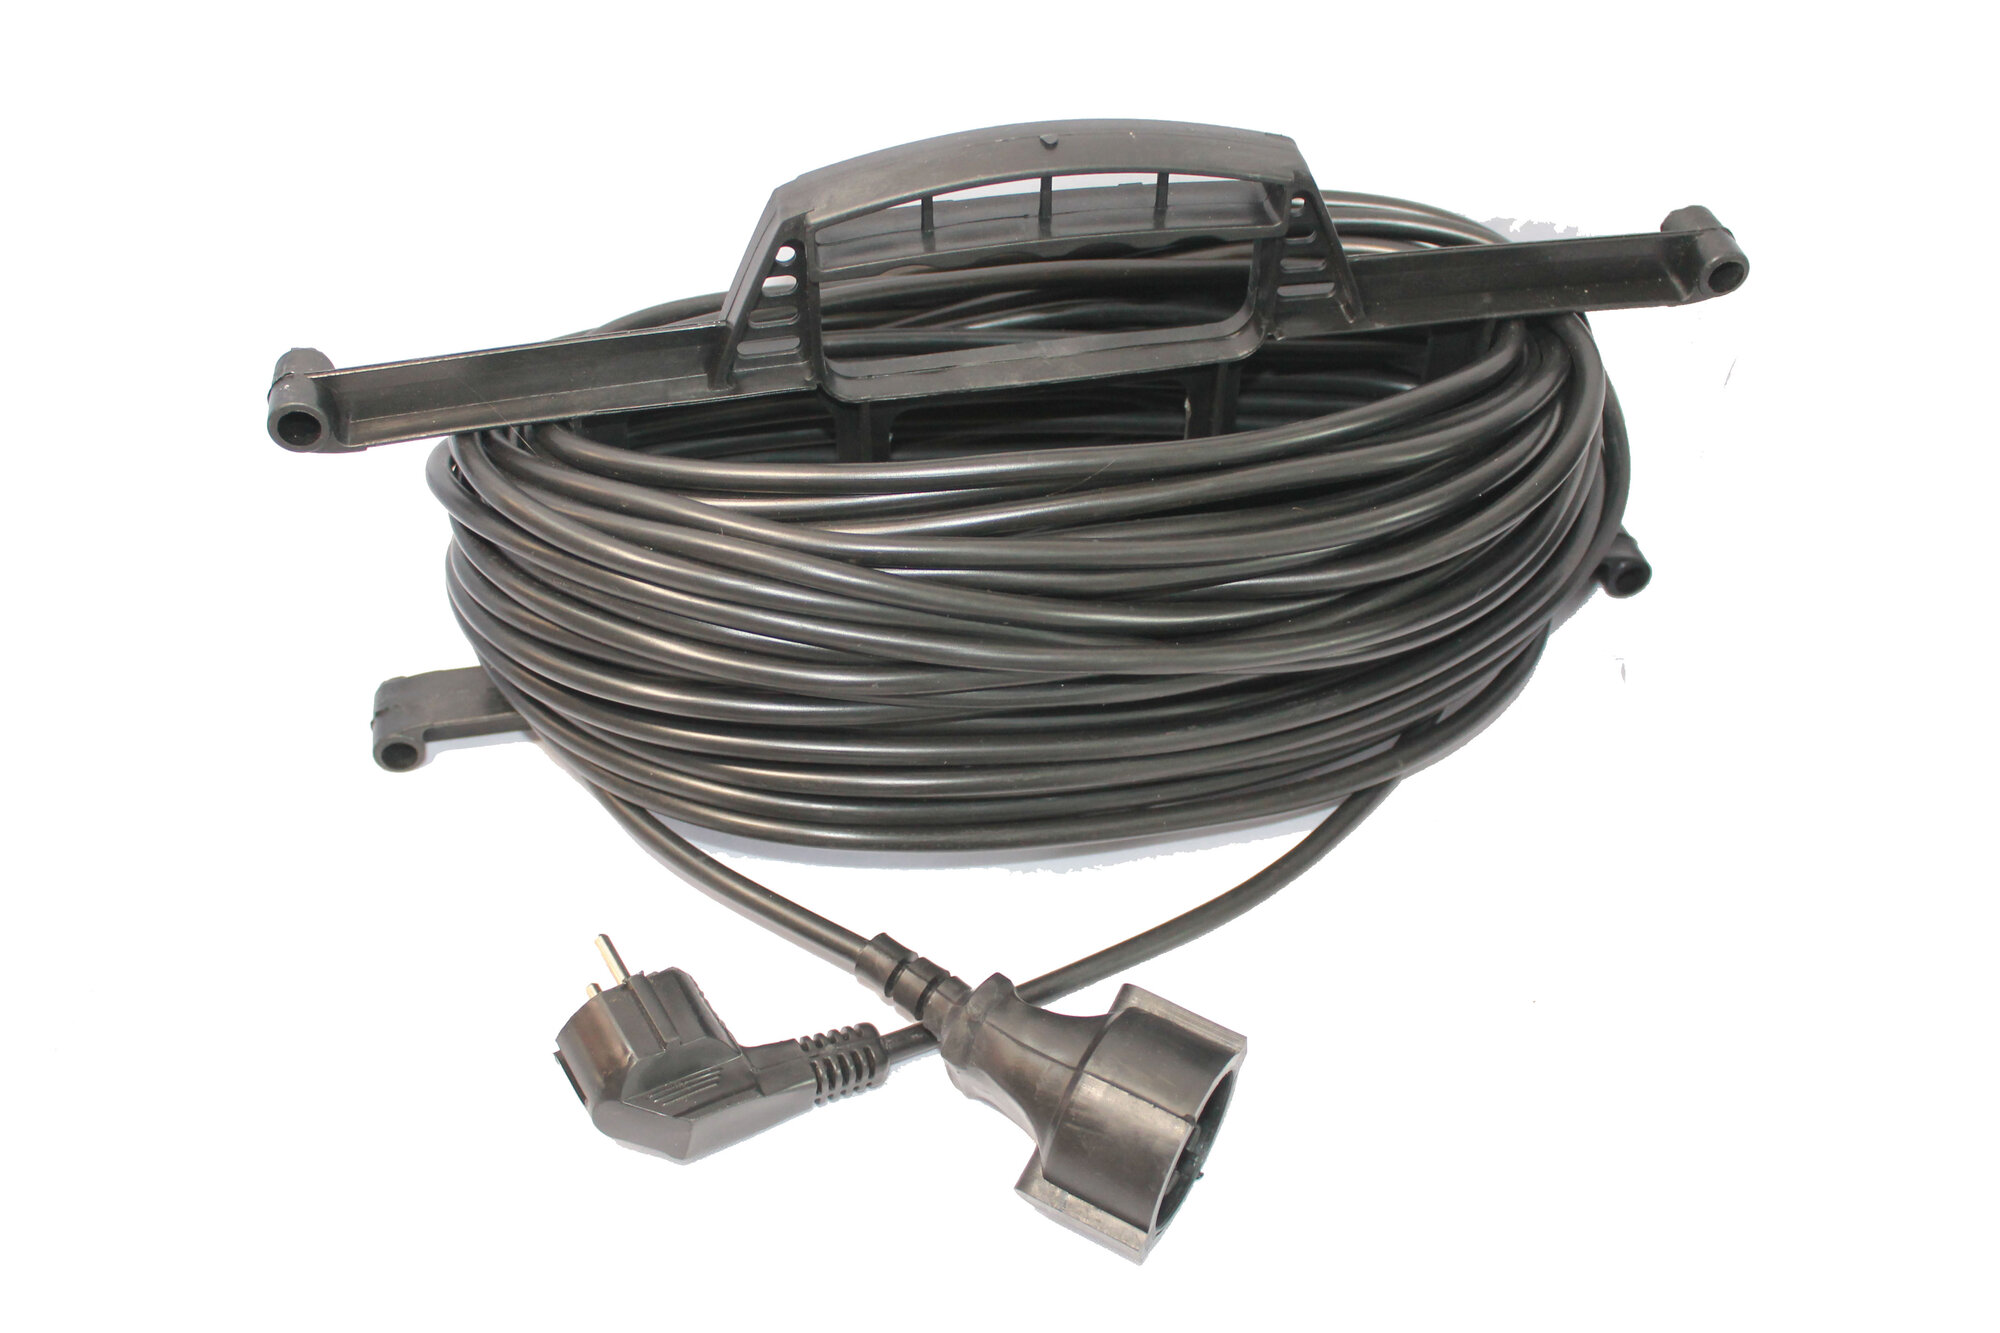 Удлинитель на рамке, длина 25м (кабель ПВС 2*1,5 ) 25 м, модель джетт 1 электрический, сетевой, садовы